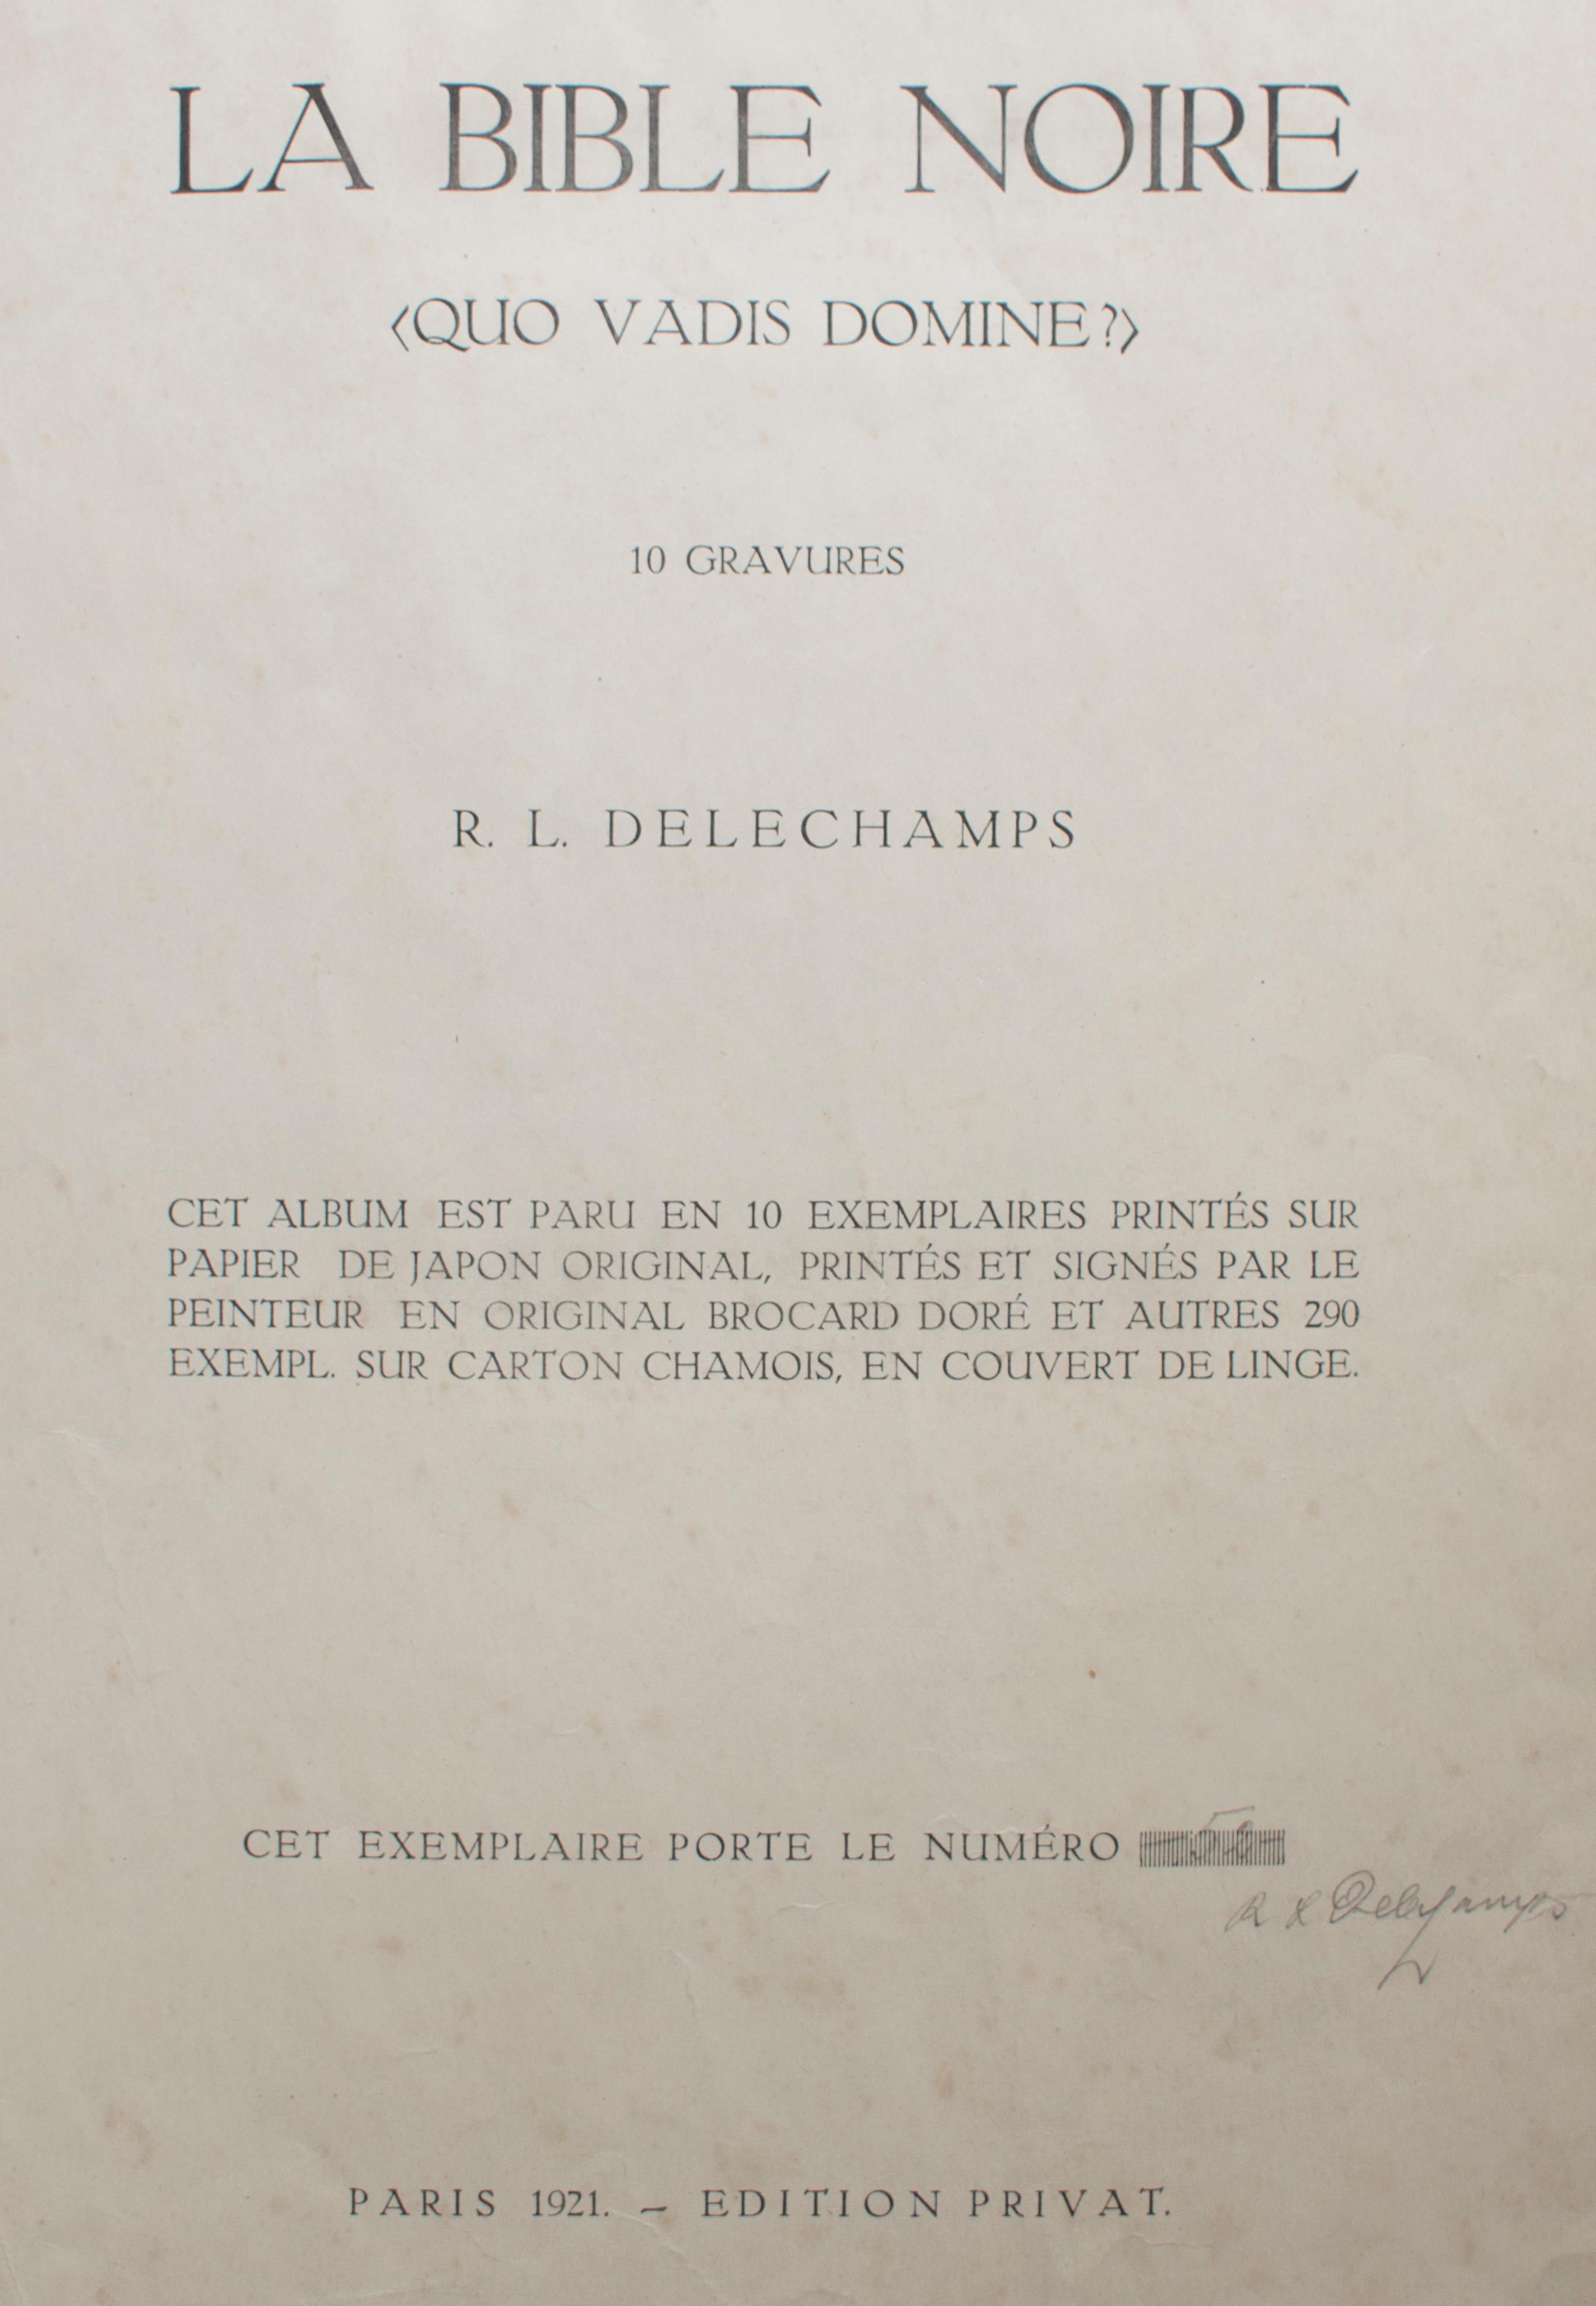 R.L. Delechamps (pseudonym) Figurative Print - La Bible Noire - Rare Complete Suite of Etchings by R.L. Delechamps - 1921